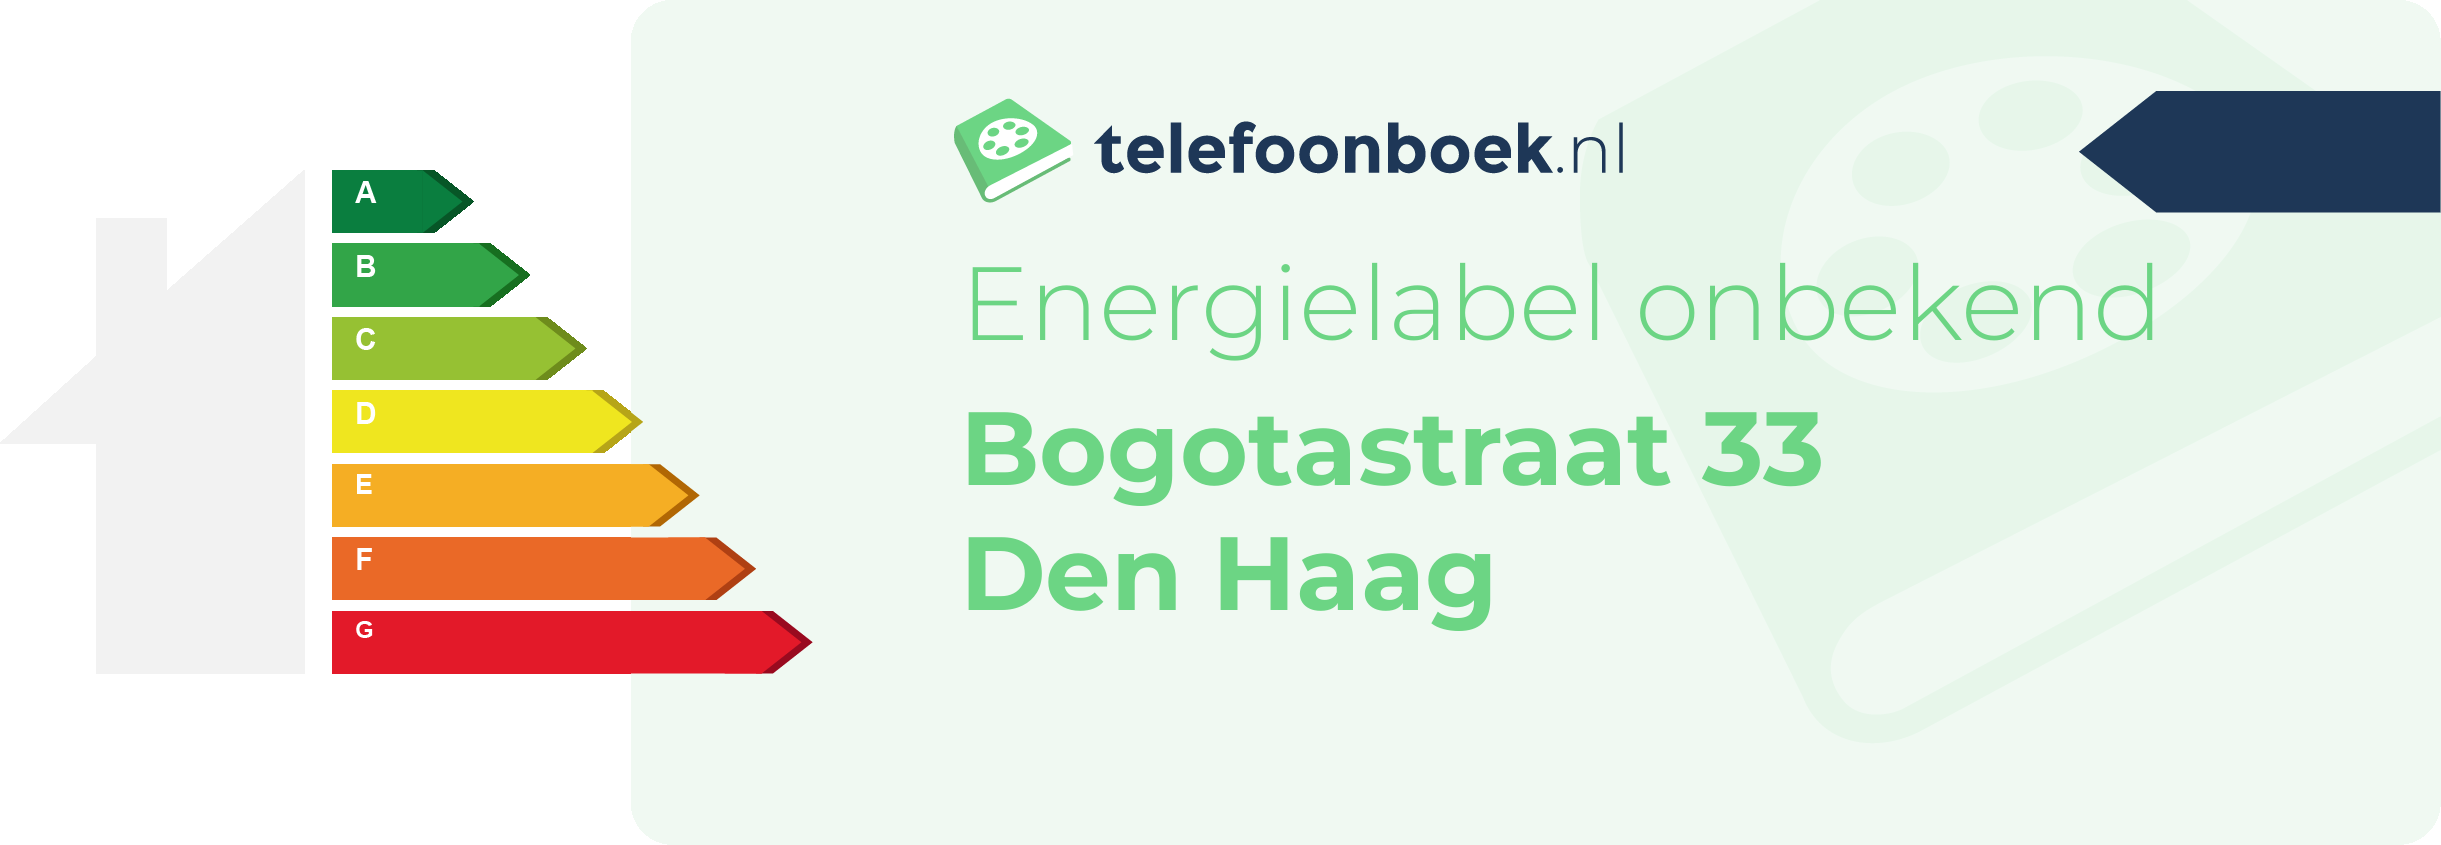 Energielabel Bogotastraat 33 Den Haag